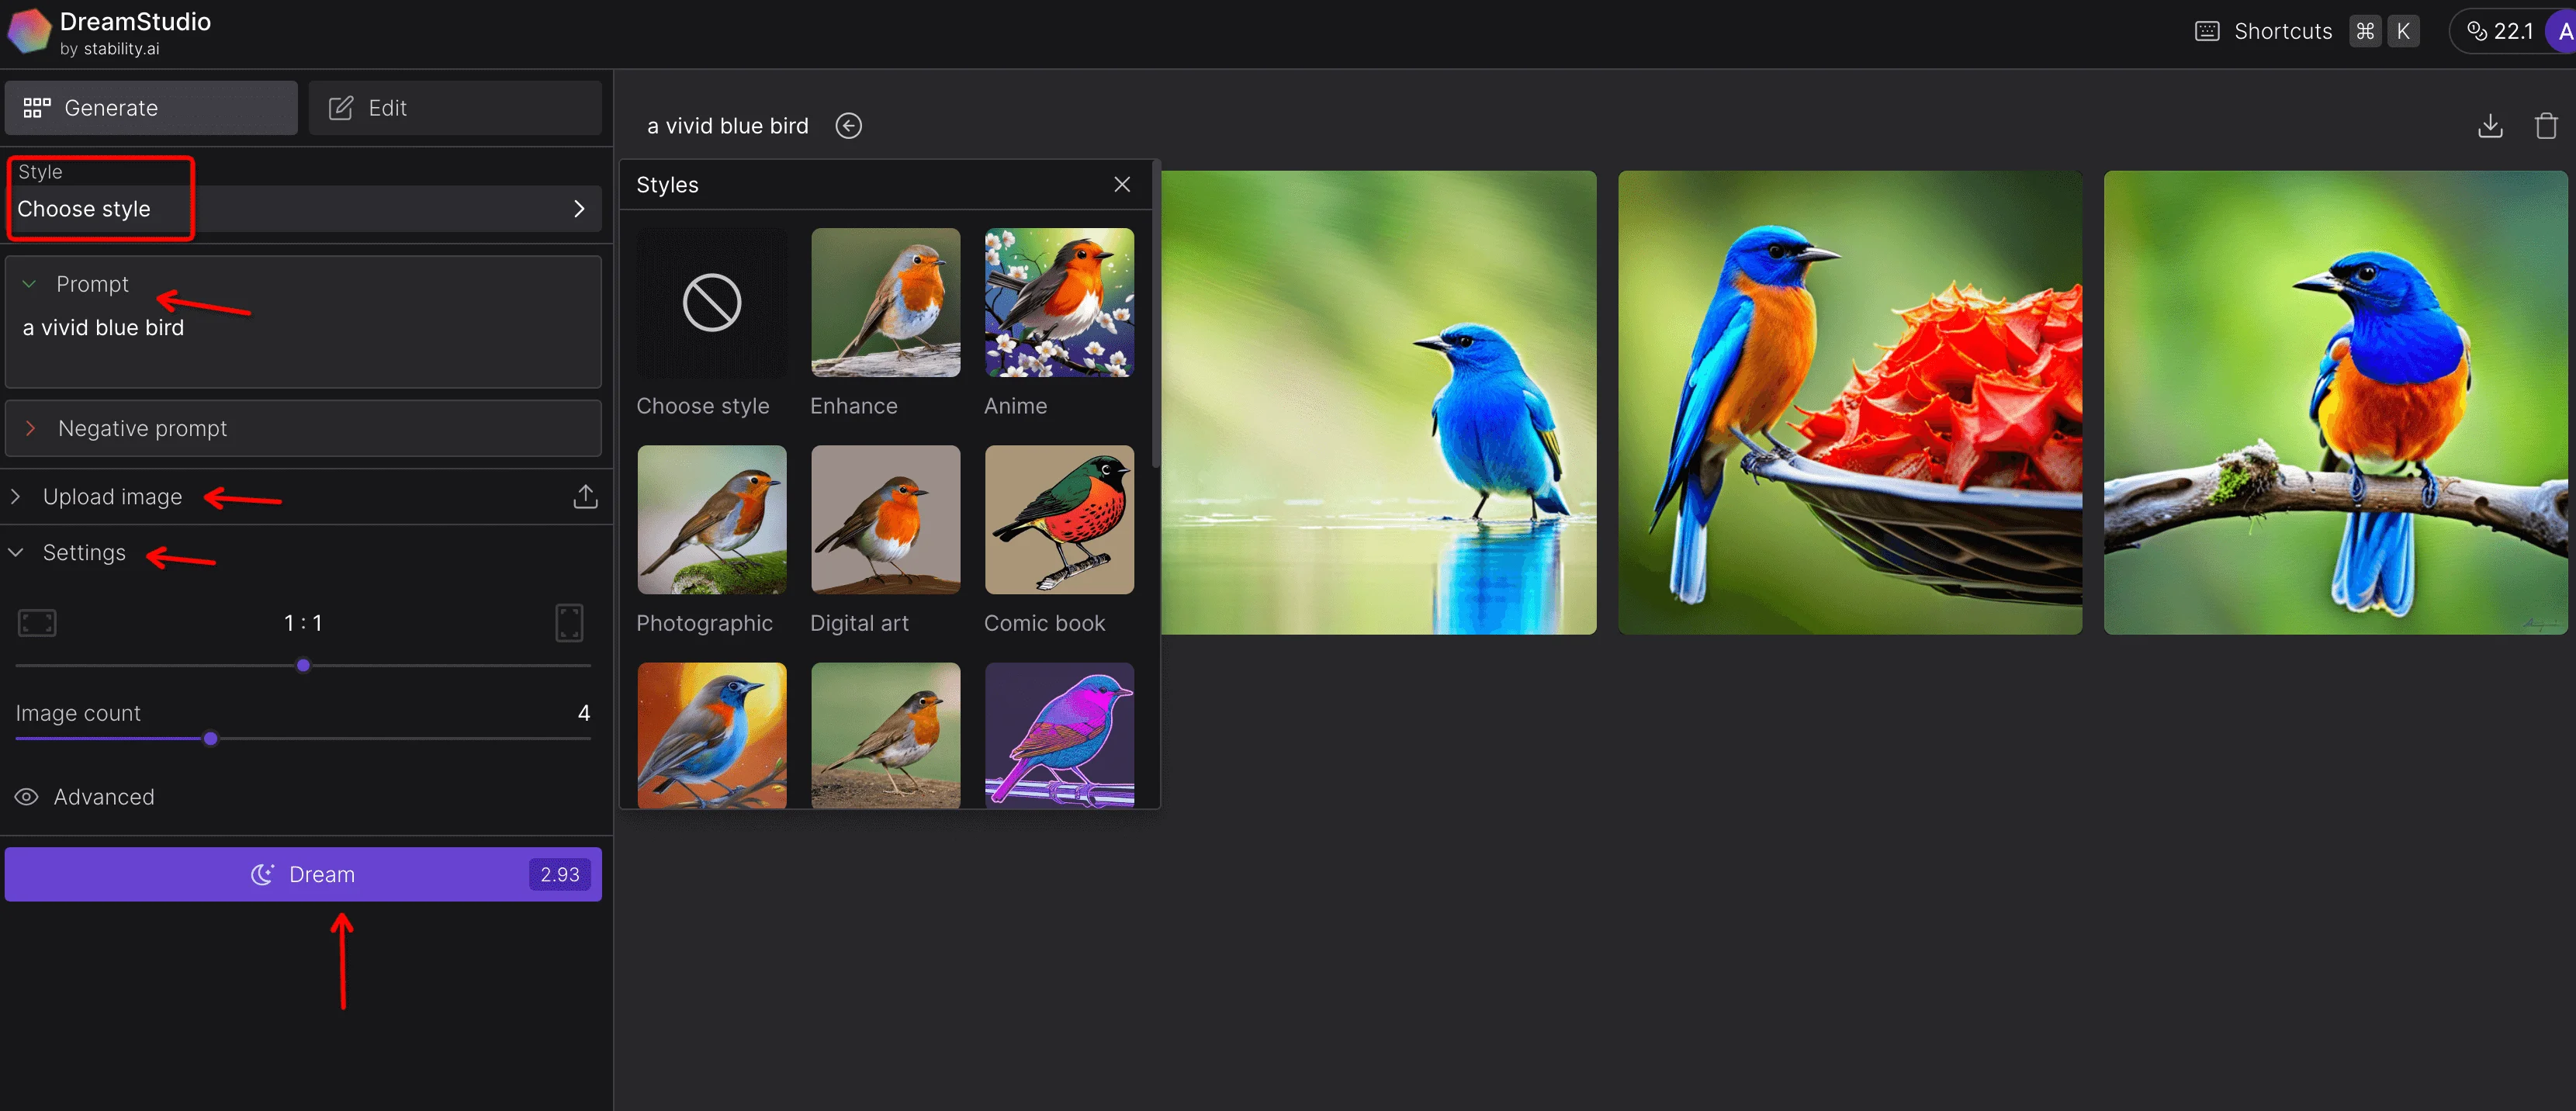 DreamStudio Generate Images A Vivid Blue Bird